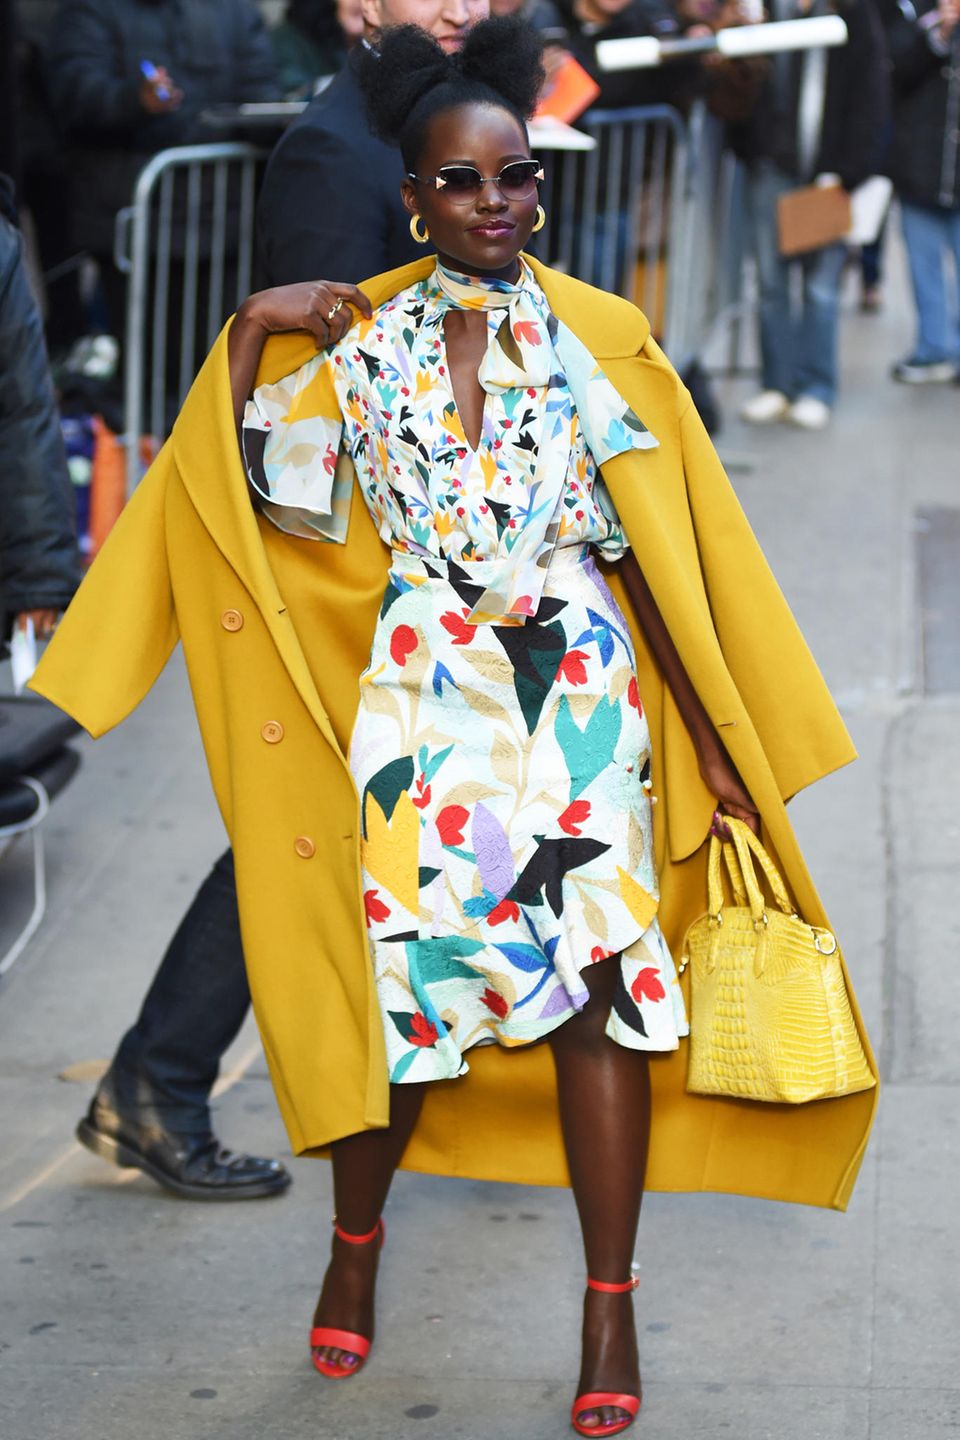 Hier kommt der Frühling! Lupita Nyong'o zeigt sich vor dem "Good Morning America"-Studio am New Yorker Times Square in einem floralen Look von Prabal Gurung, den sie mit einem sonnig gelben Mantel kombiniert.